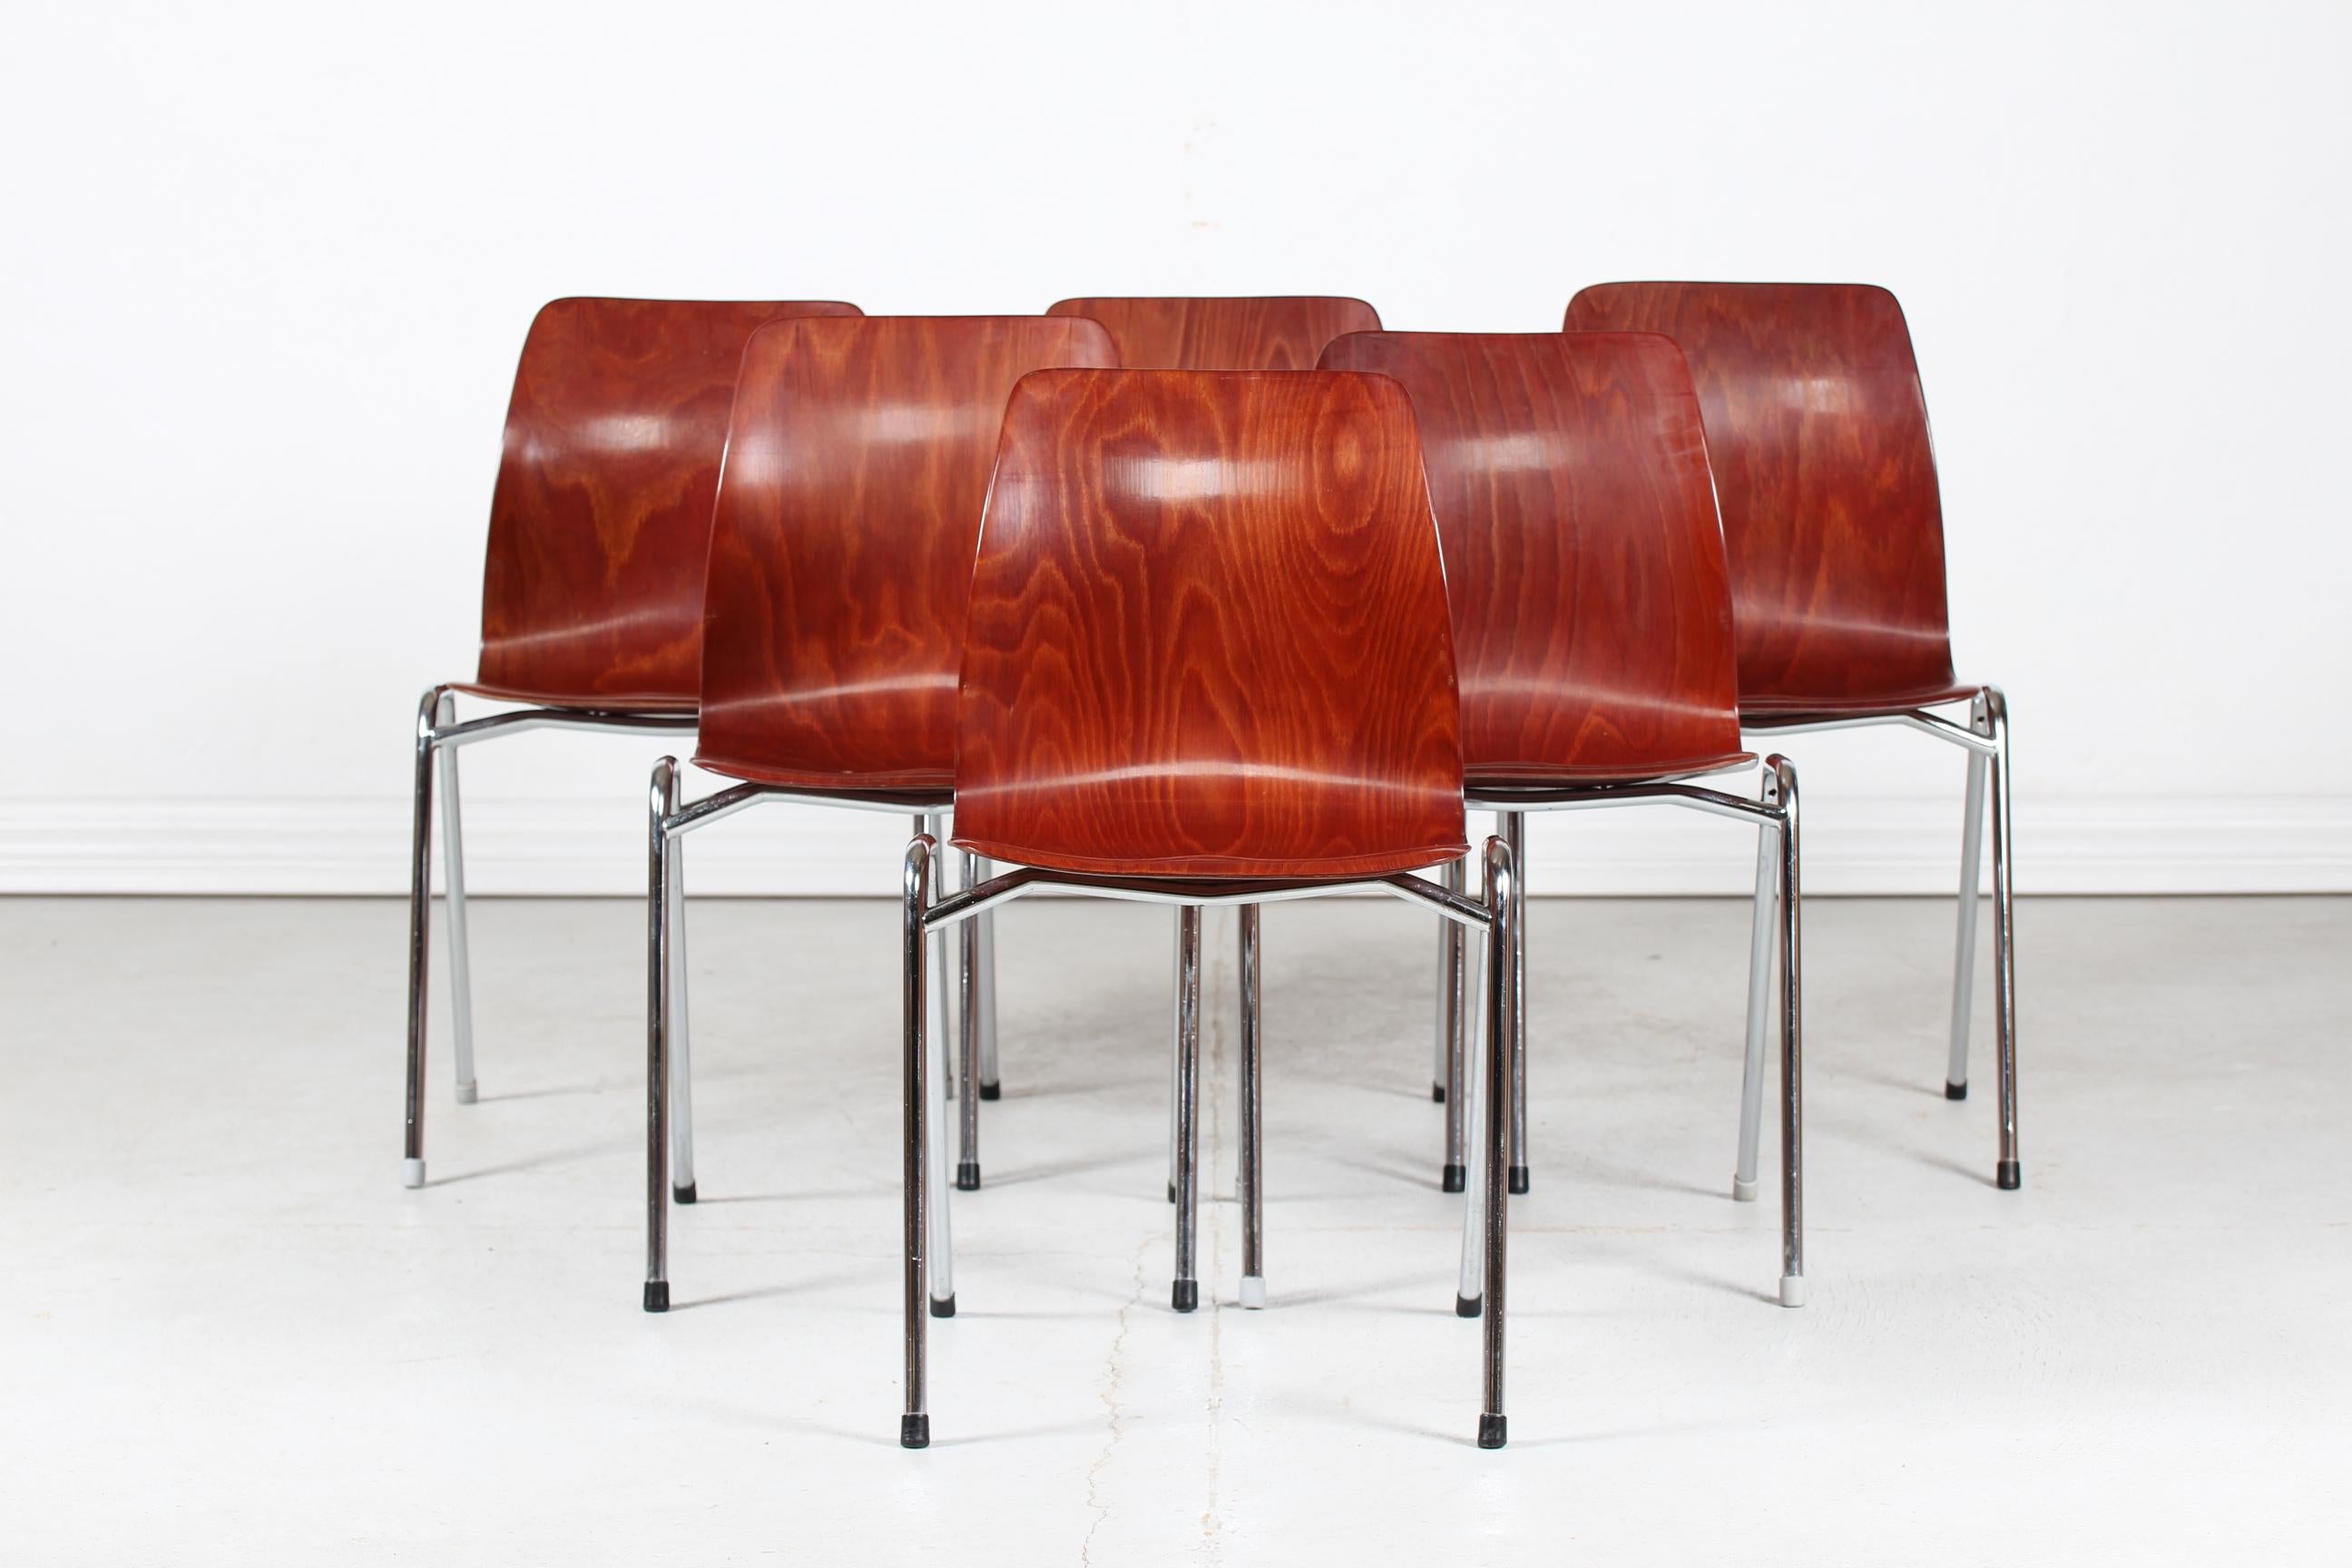 Ein Satz von sechs deutschen Flötotto und Pagholz Stapelstühlen hergestellt von Pagholz in Deutschland.

Die Stühle sind aus nussbraunem Formsperrholz mit Lackierung gefertigt. Beine aus verchromtem Metall.

Schöner Vintage-Zustand nach